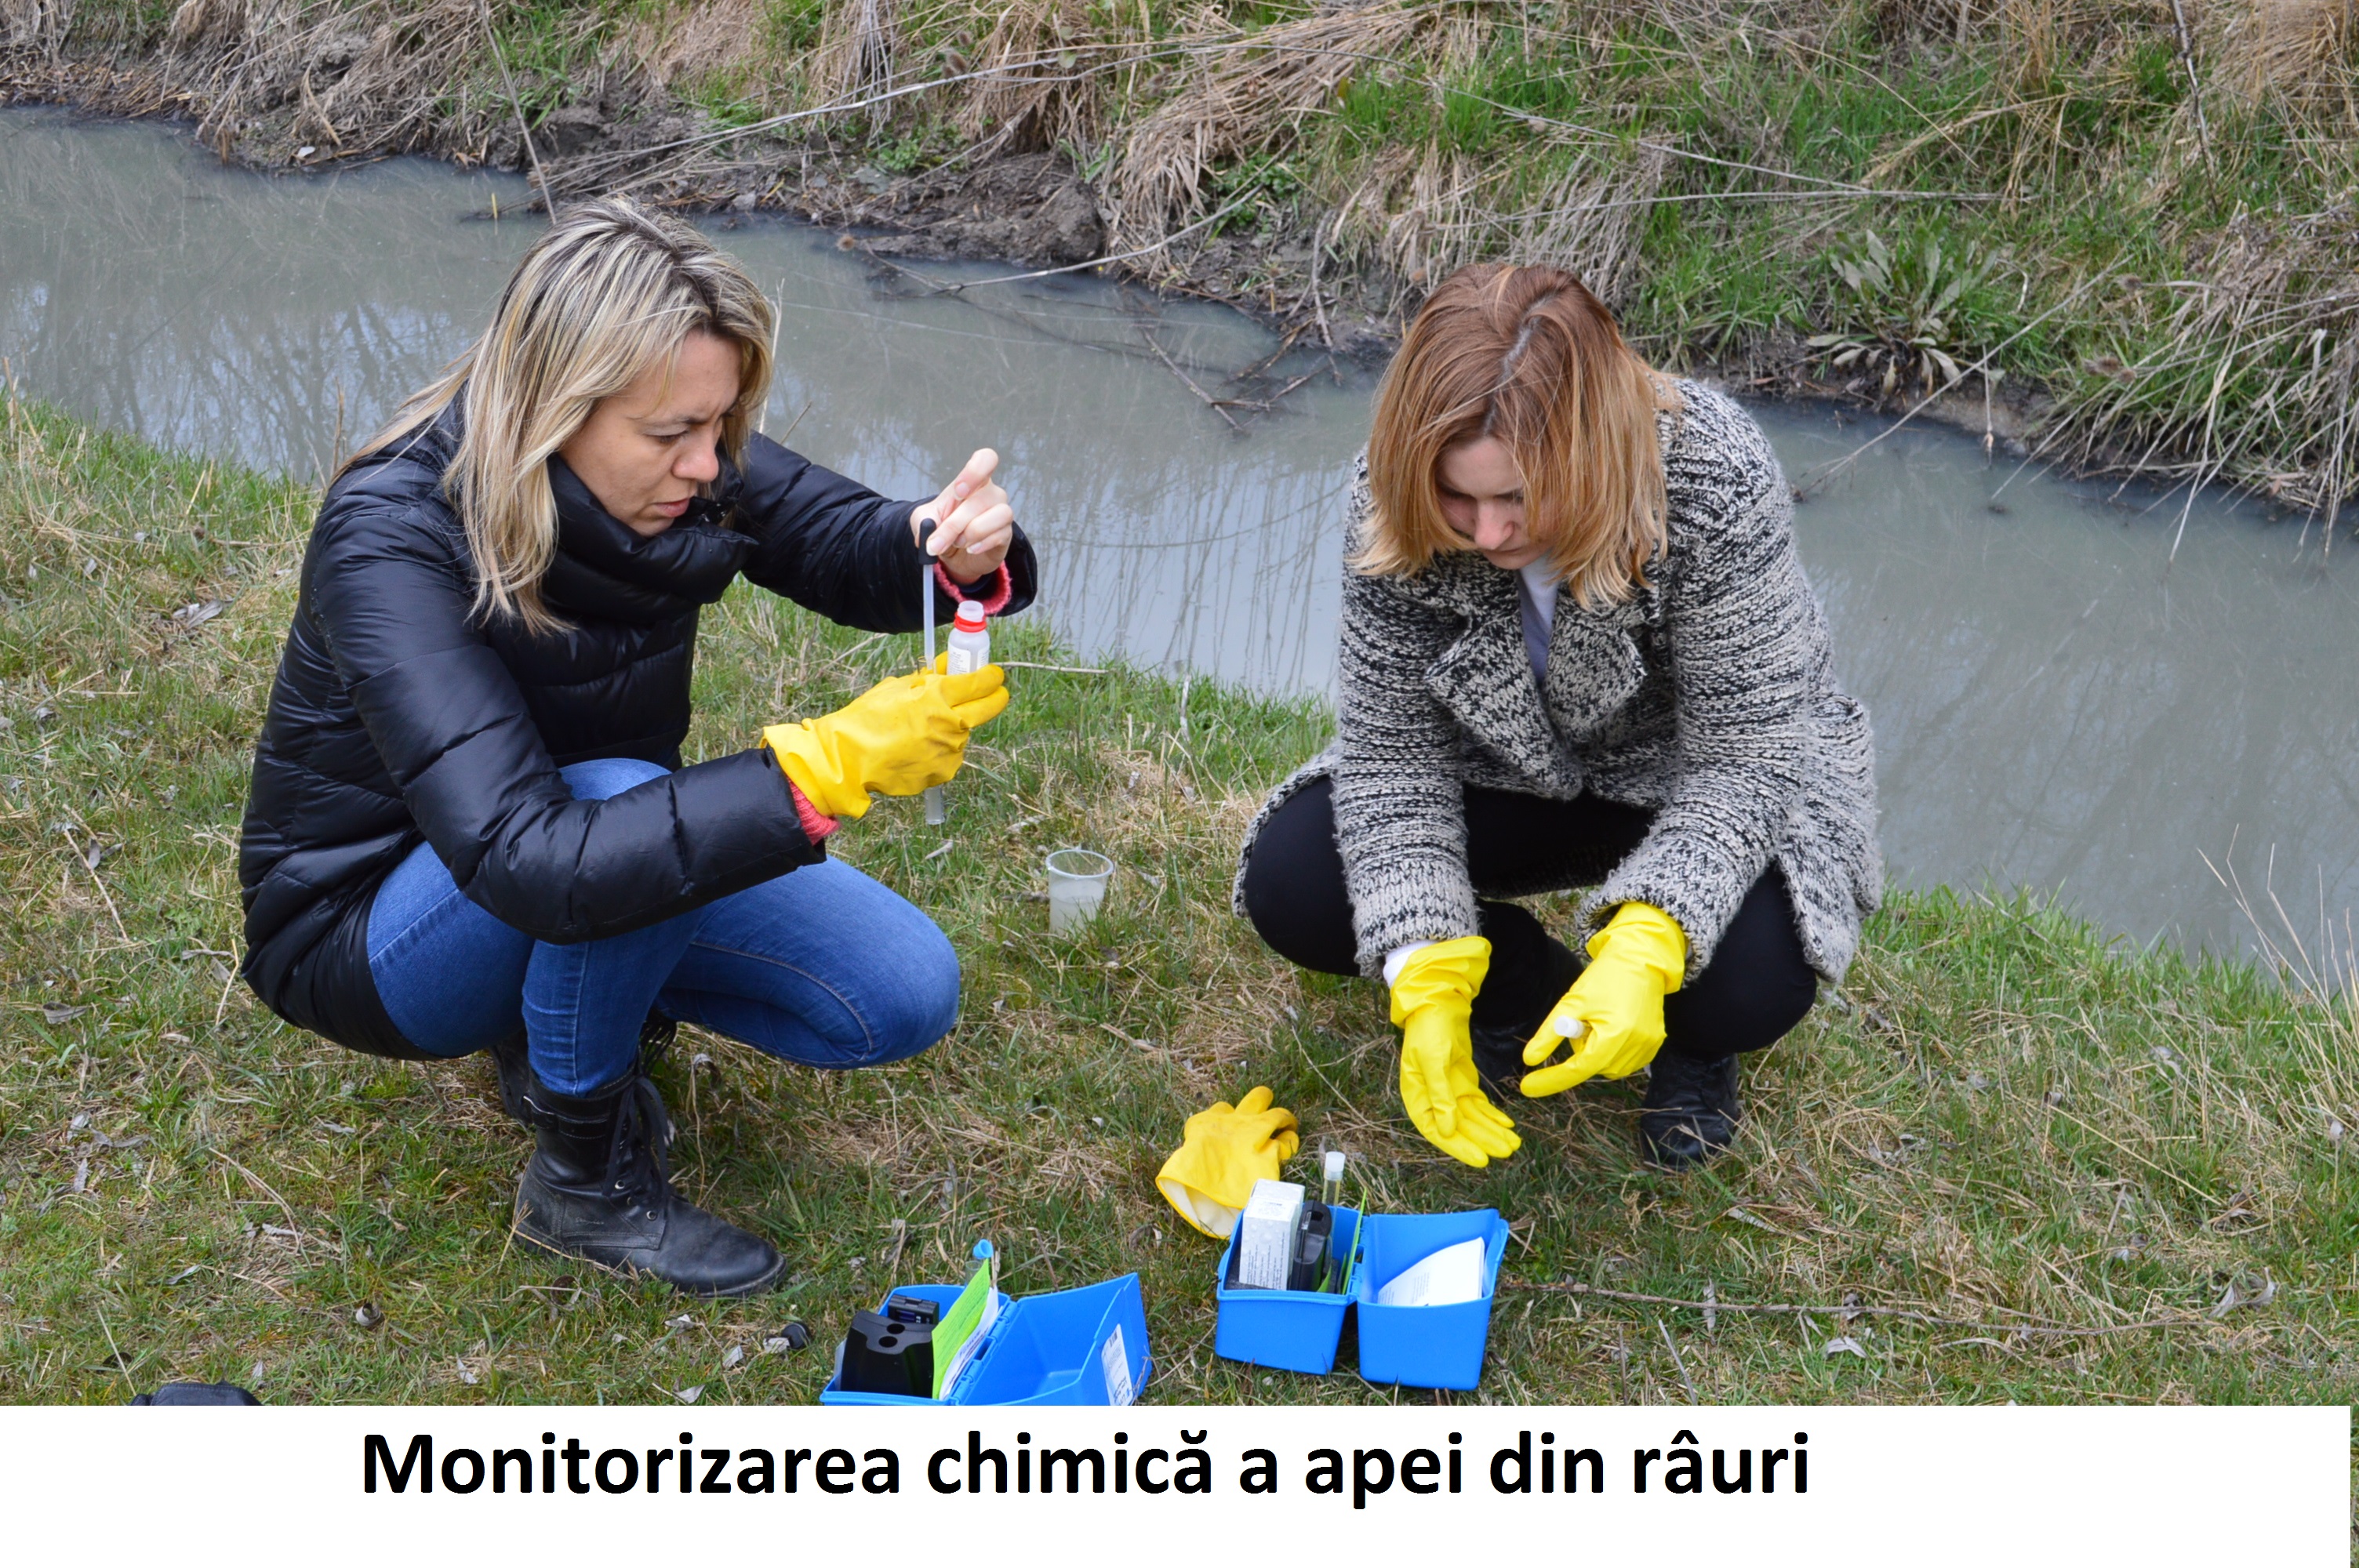 Monitorizarea chimică a apei din râuri: Iuliana Cantaragiu și Ina Coșeru, Centrul Național de Mediu